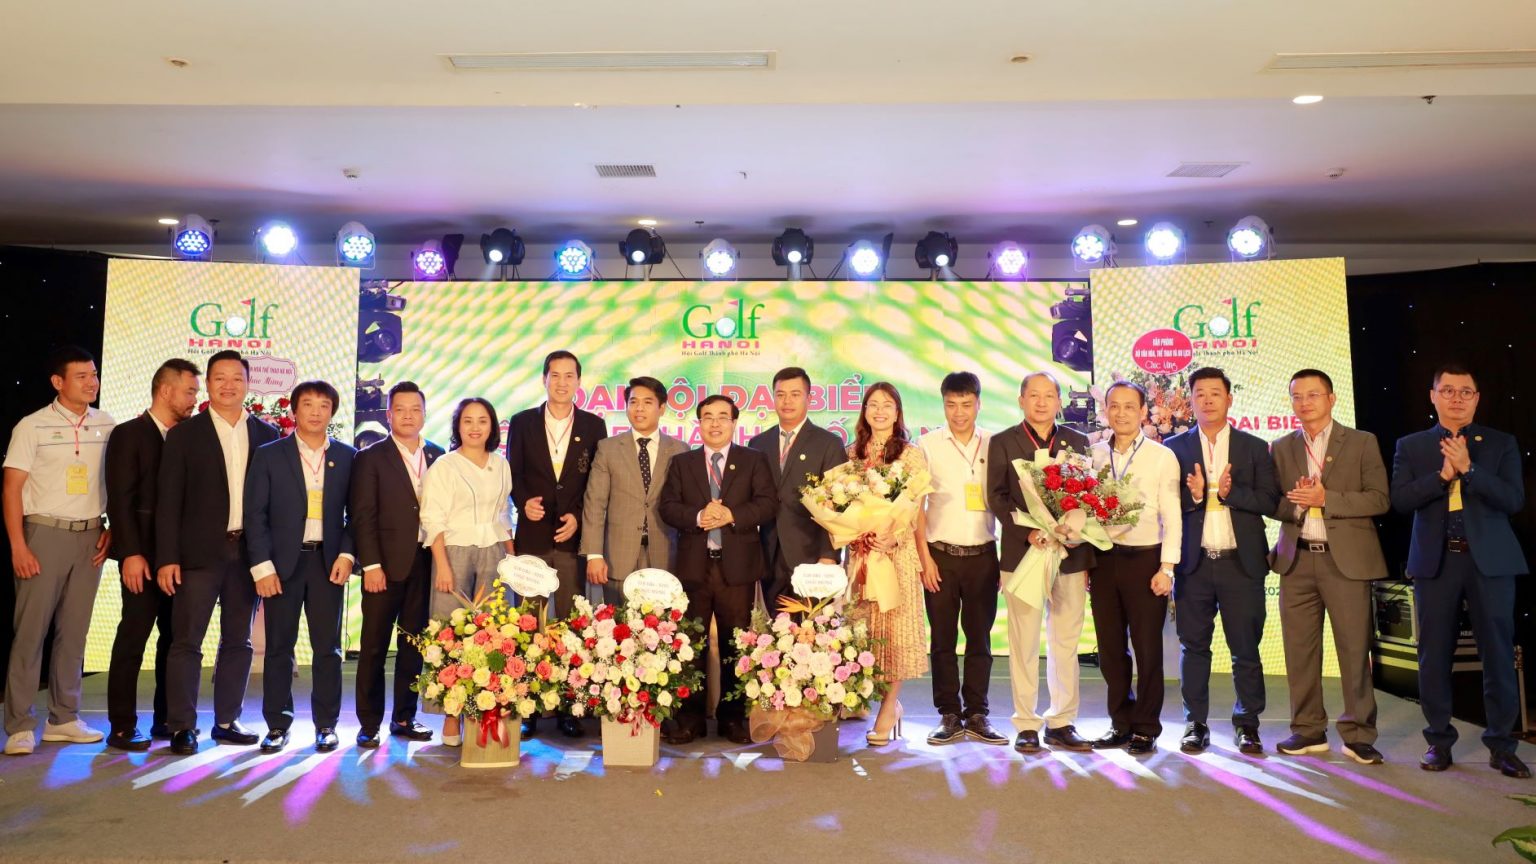 Hiệp hội Golf thành phố Hà Nội ra mắt bộ nhận diện thương hiệu mới và ra quyết định hủy giải vô địch các CLB Hà Nội